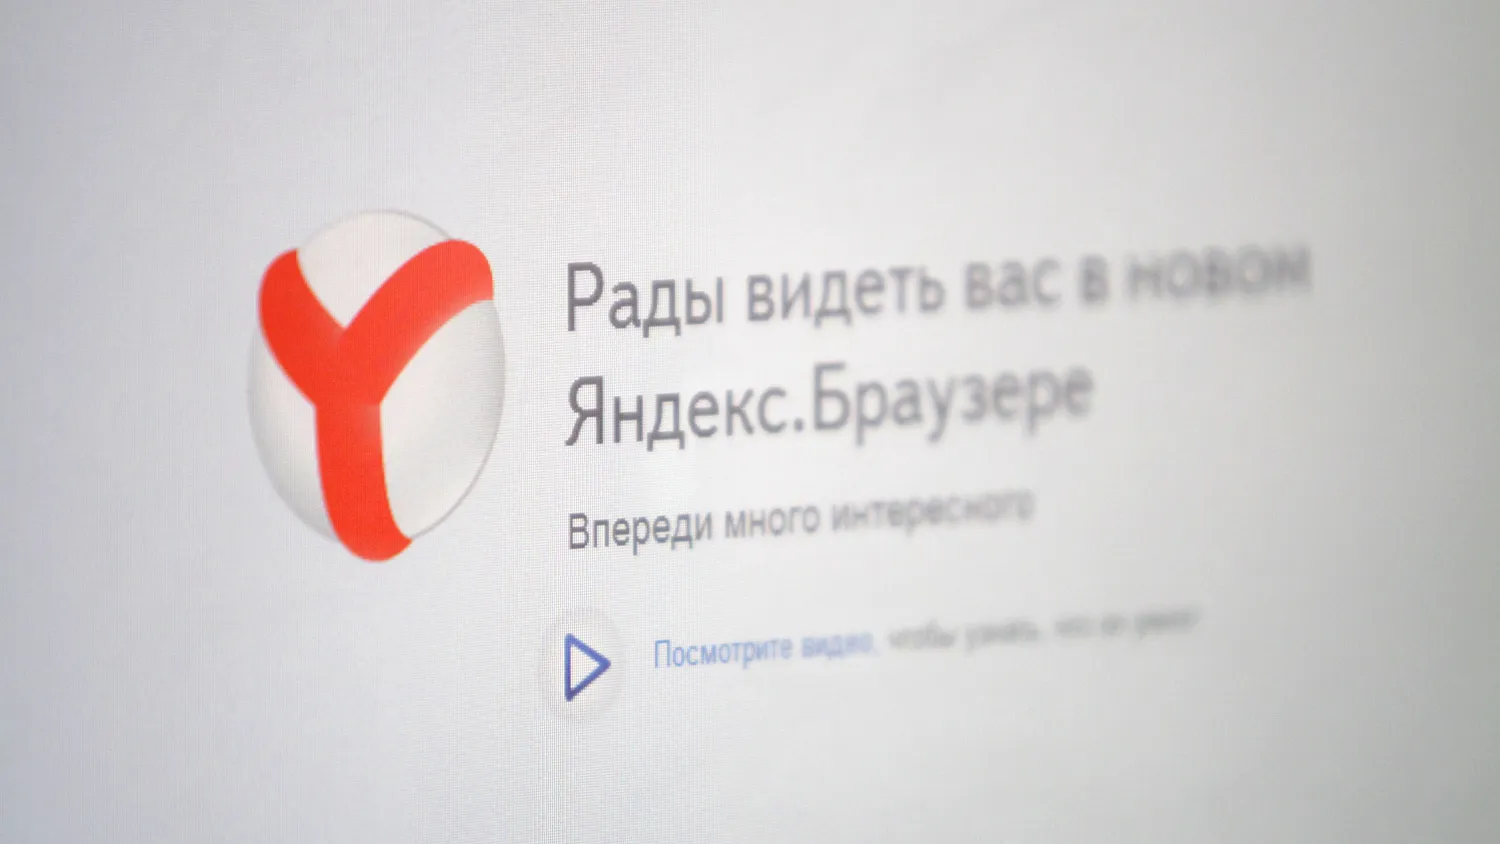 Вышла новая версия «Яндекс.Браузера»